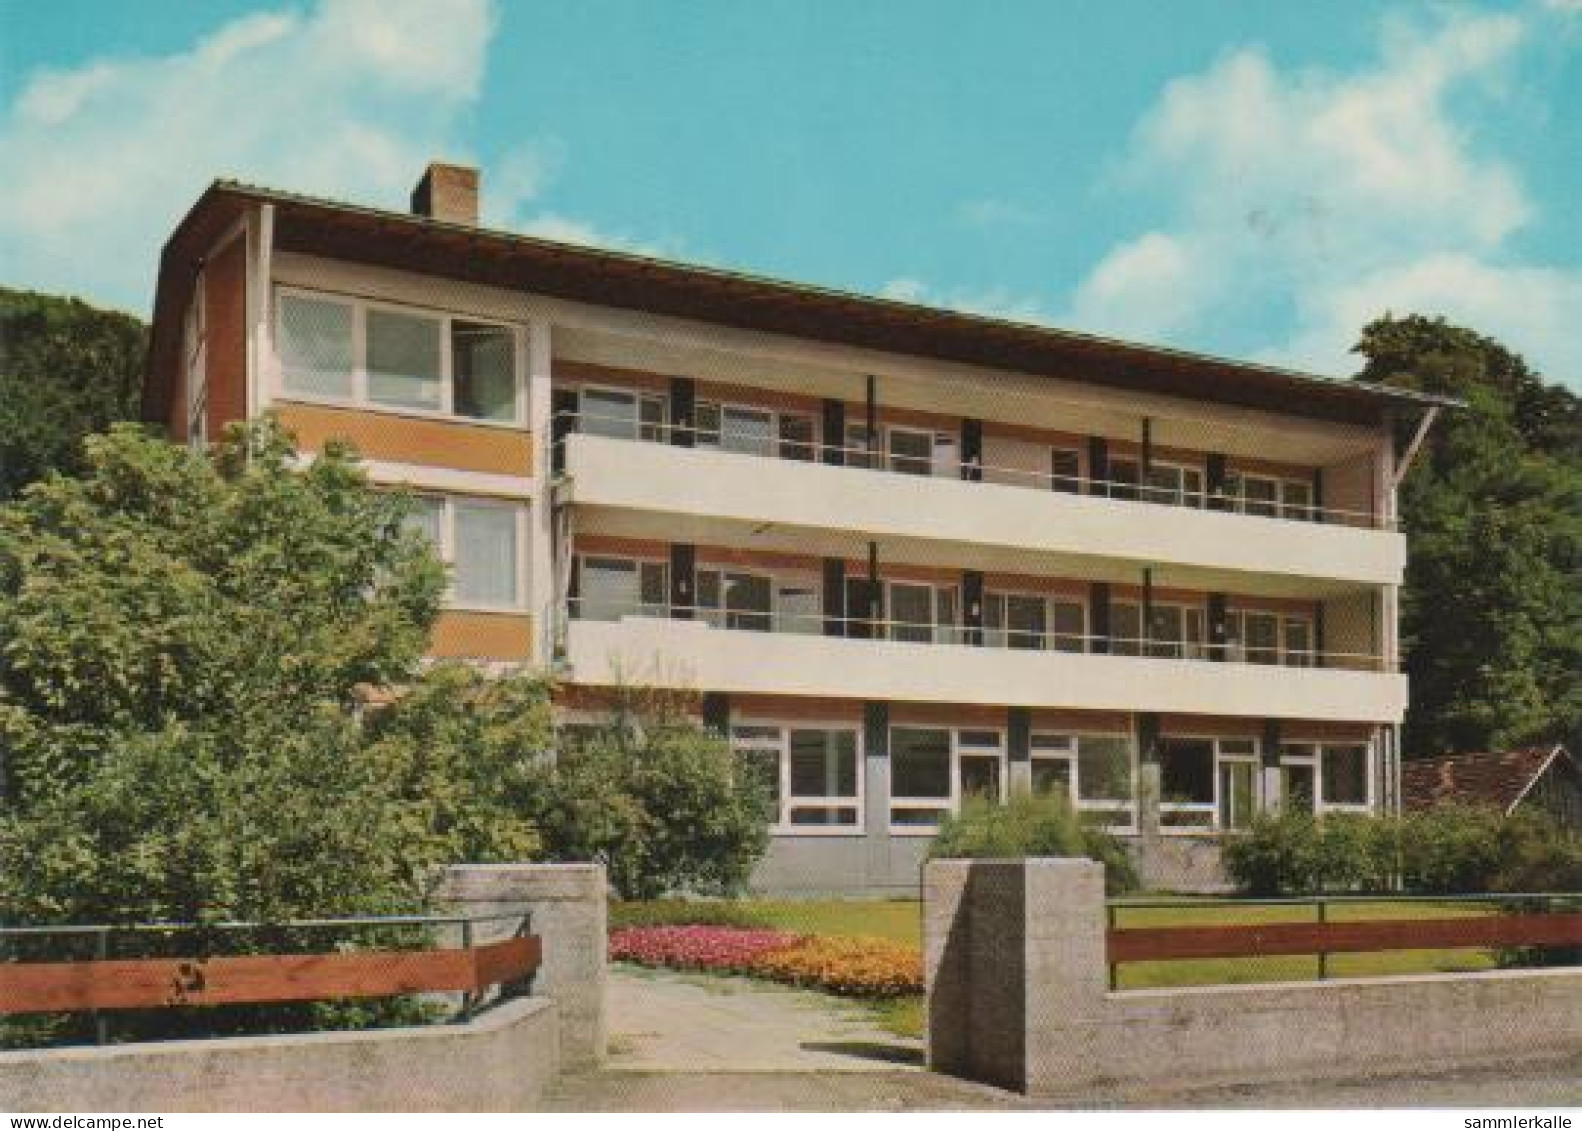 1167 - Bad Ditzenbach - Haus Hiltenburg Und St. Raphael - 1985 - Goeppingen